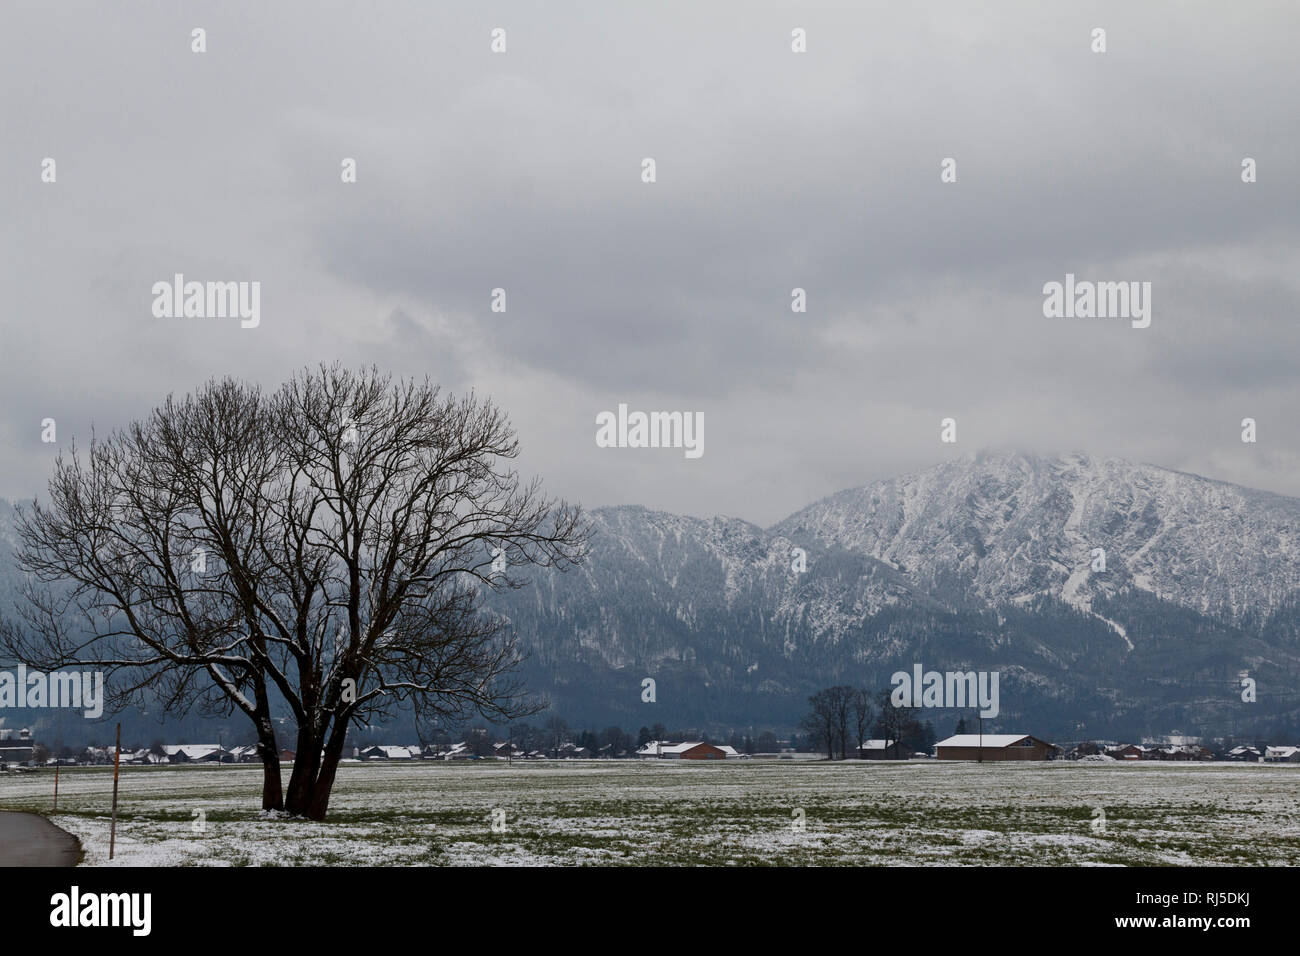 Bergpanorama in Bayern mit Blick auf die Alpen, bew?lkt, winterlich kaltes Szenario, menschenleer, Stock Photo